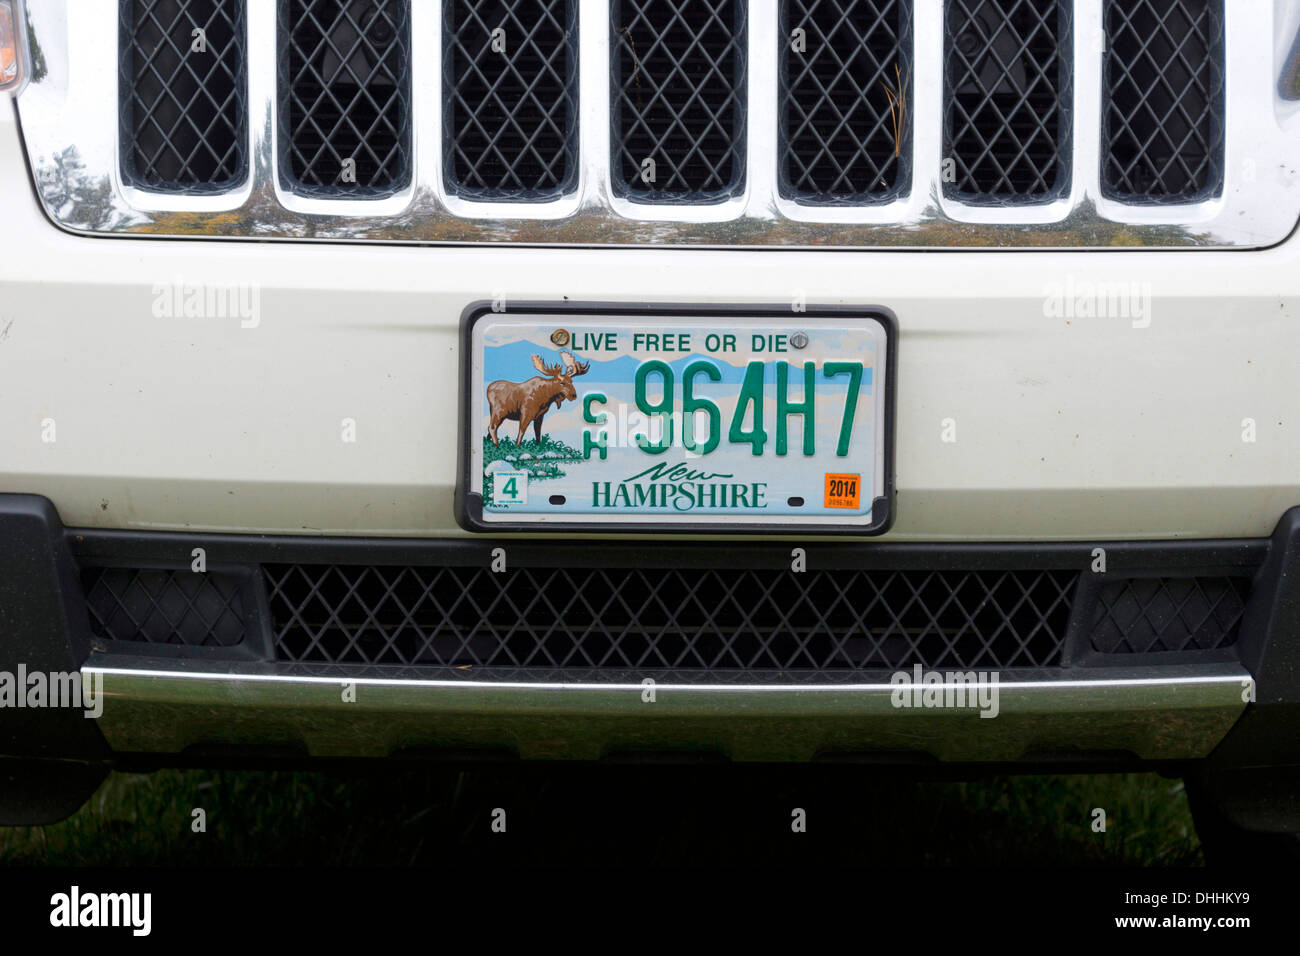 New Hampshire-Kfz-Kennzeichen zeigt einen Elch und das Motto "Live Free or Die" Stockfoto